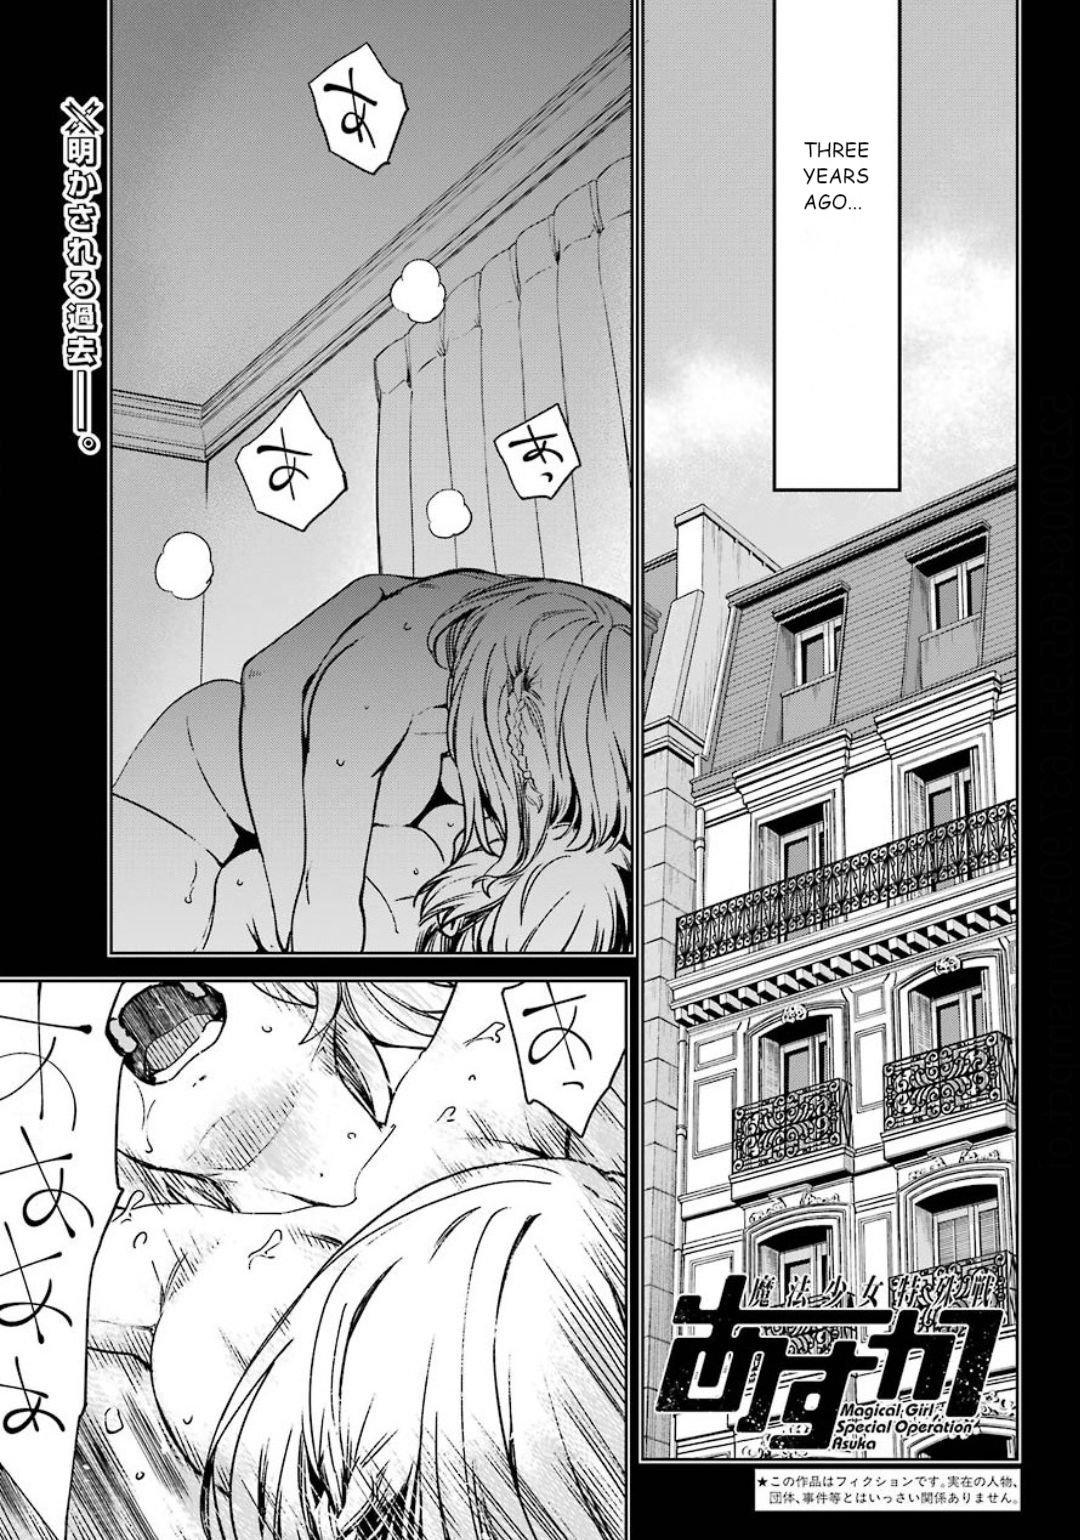 Mahou shoujo tokushusen asuka sex scene manga